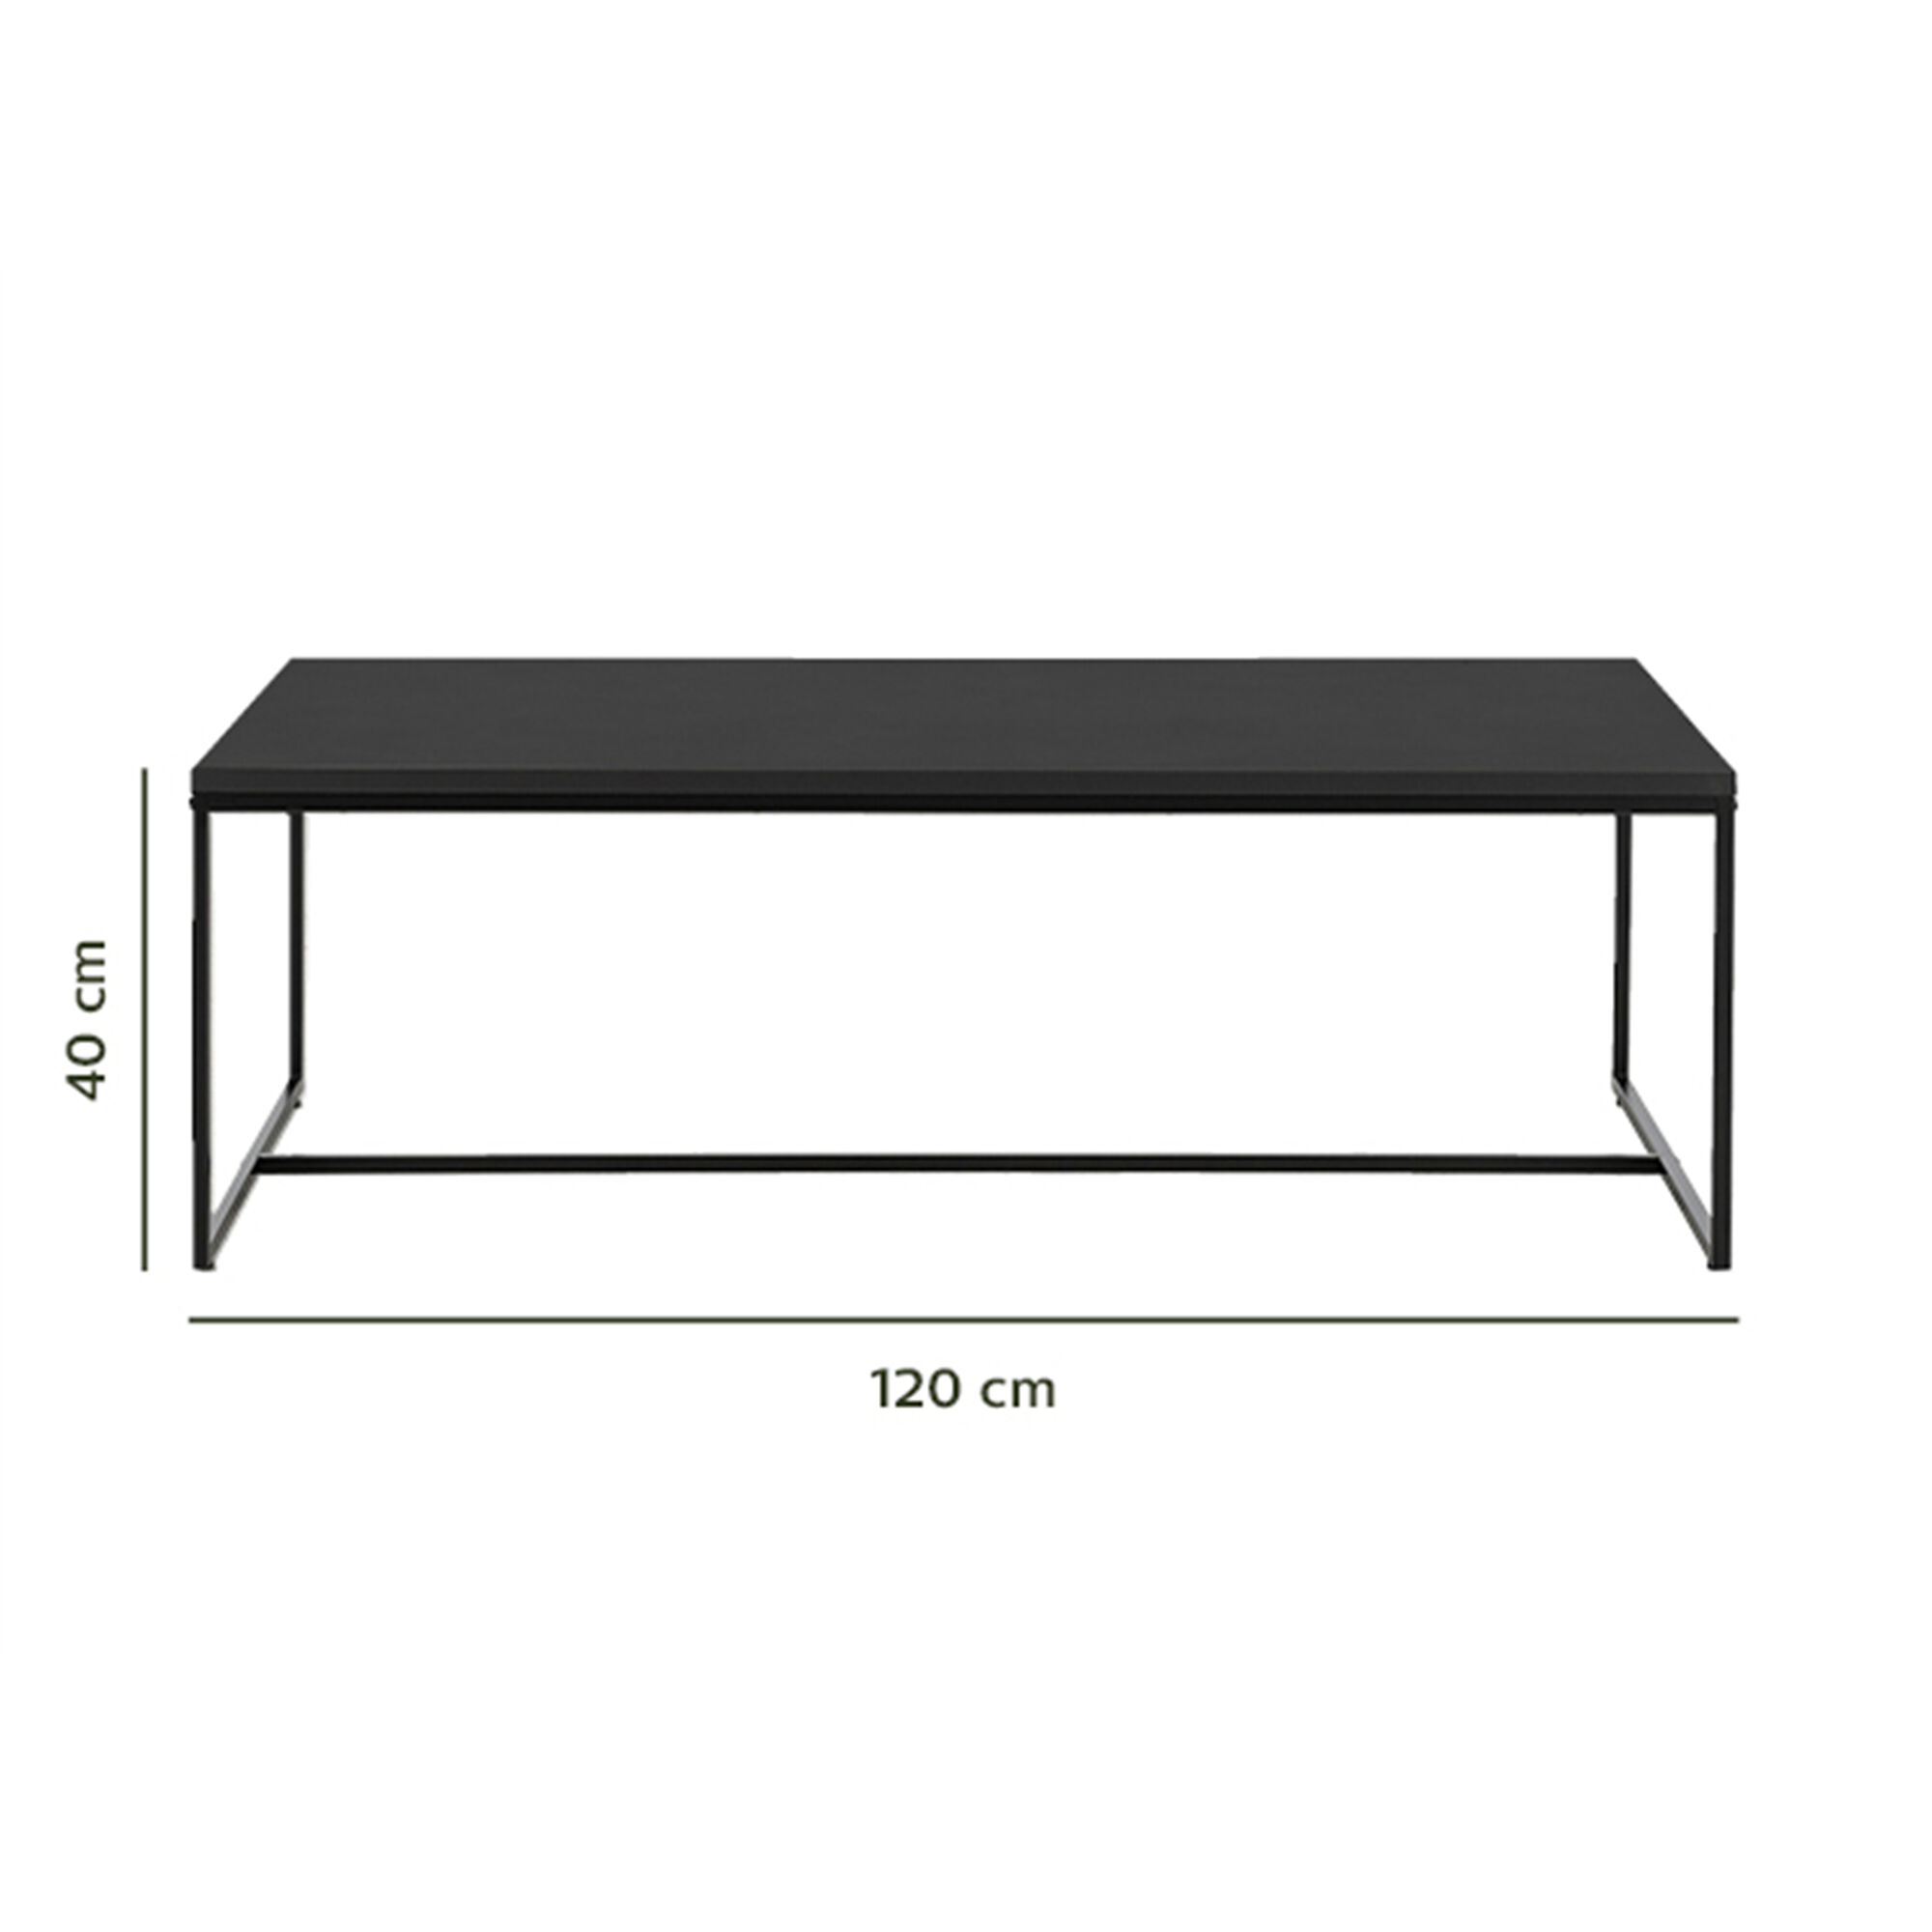 Table basse rectangulaire en bois et acier - noir-LEONORE